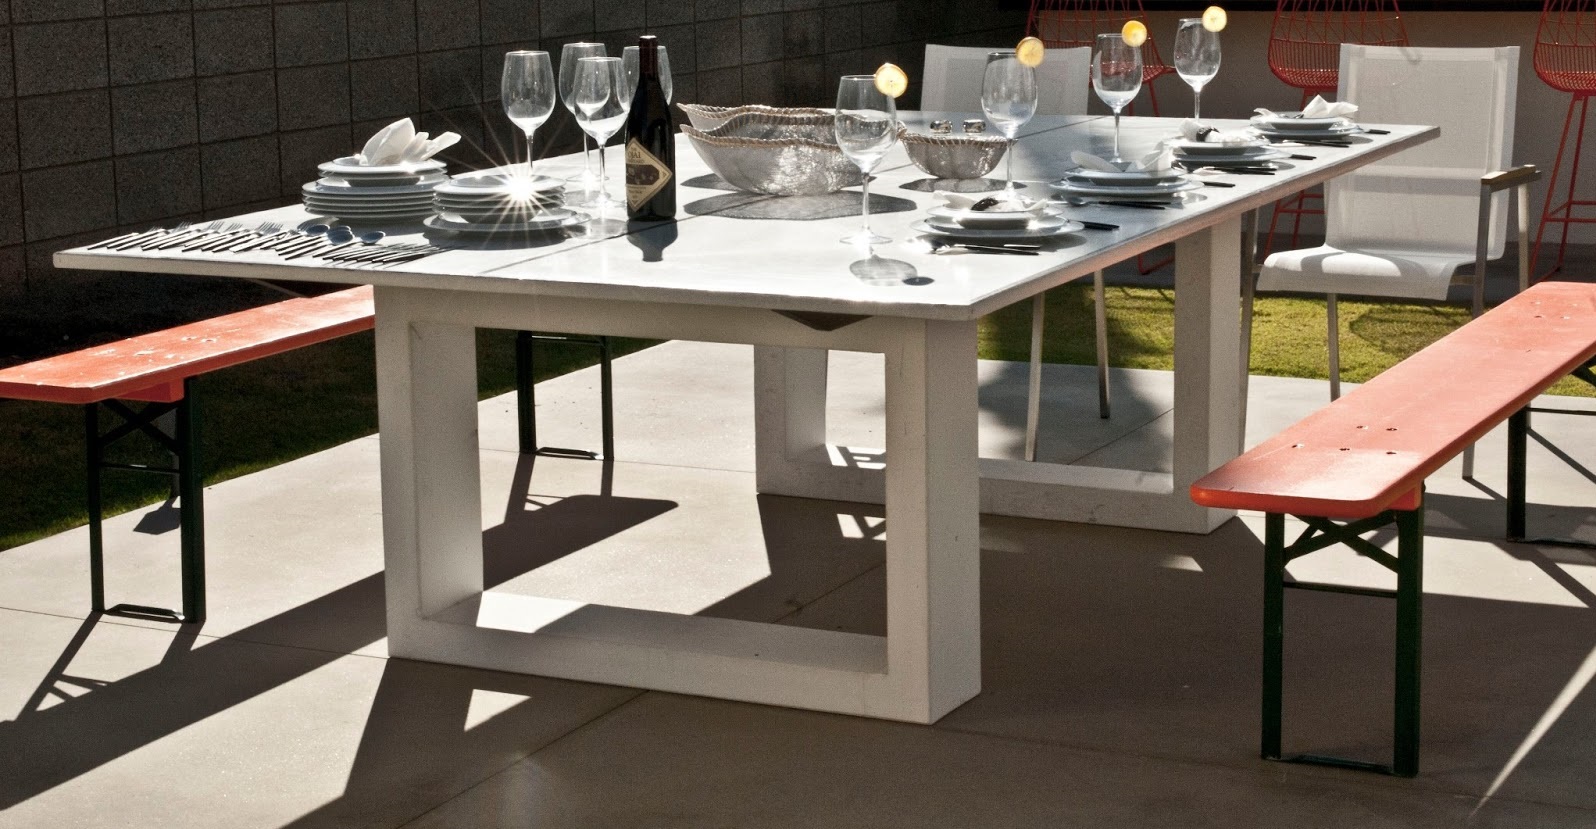 James De Wulf’s Ping Pong Dining Table còn được sử dụng như bàn ăn ngoài trời